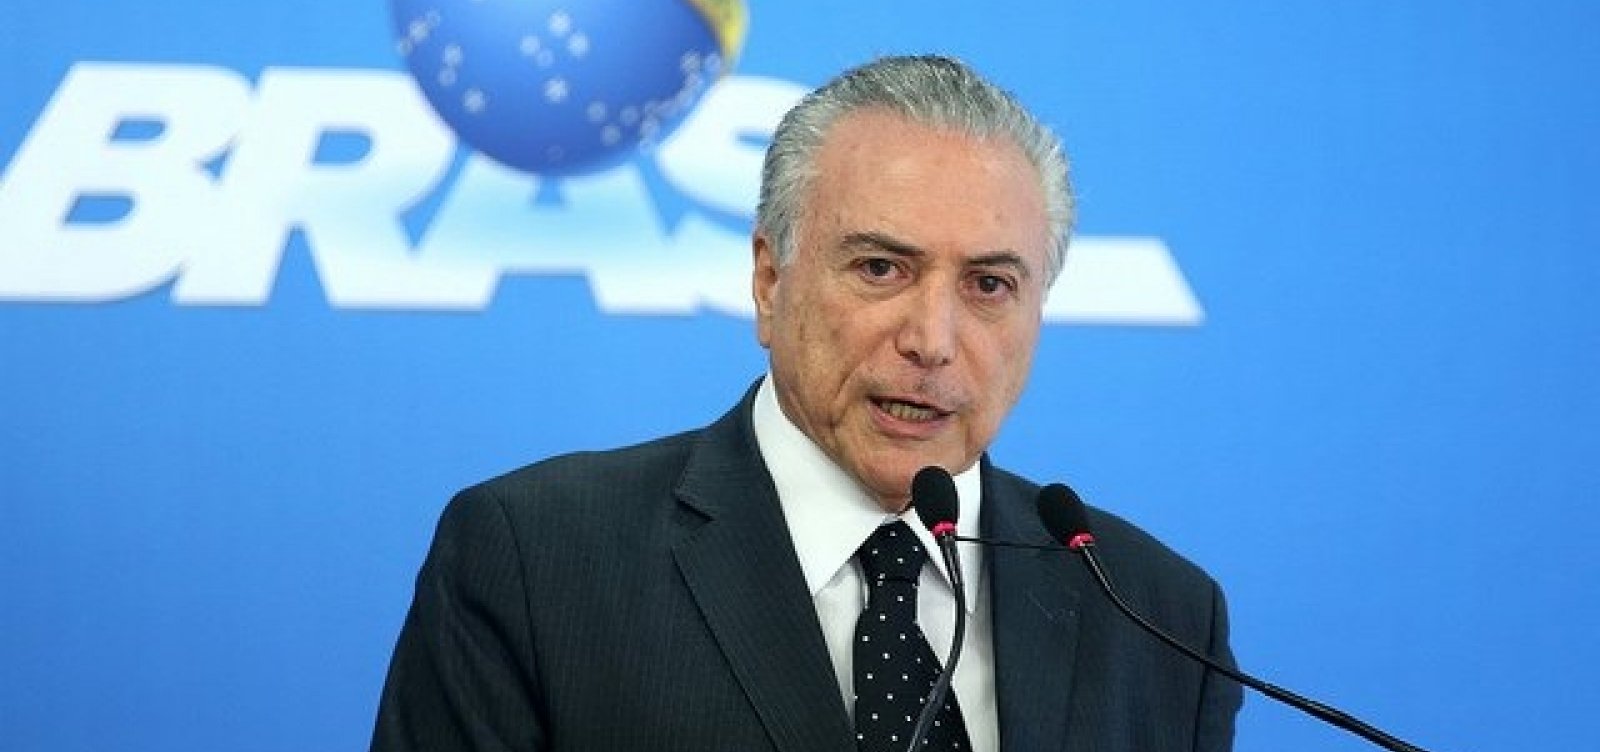 Com decisão judicial, Temer retira benefícios de Lula